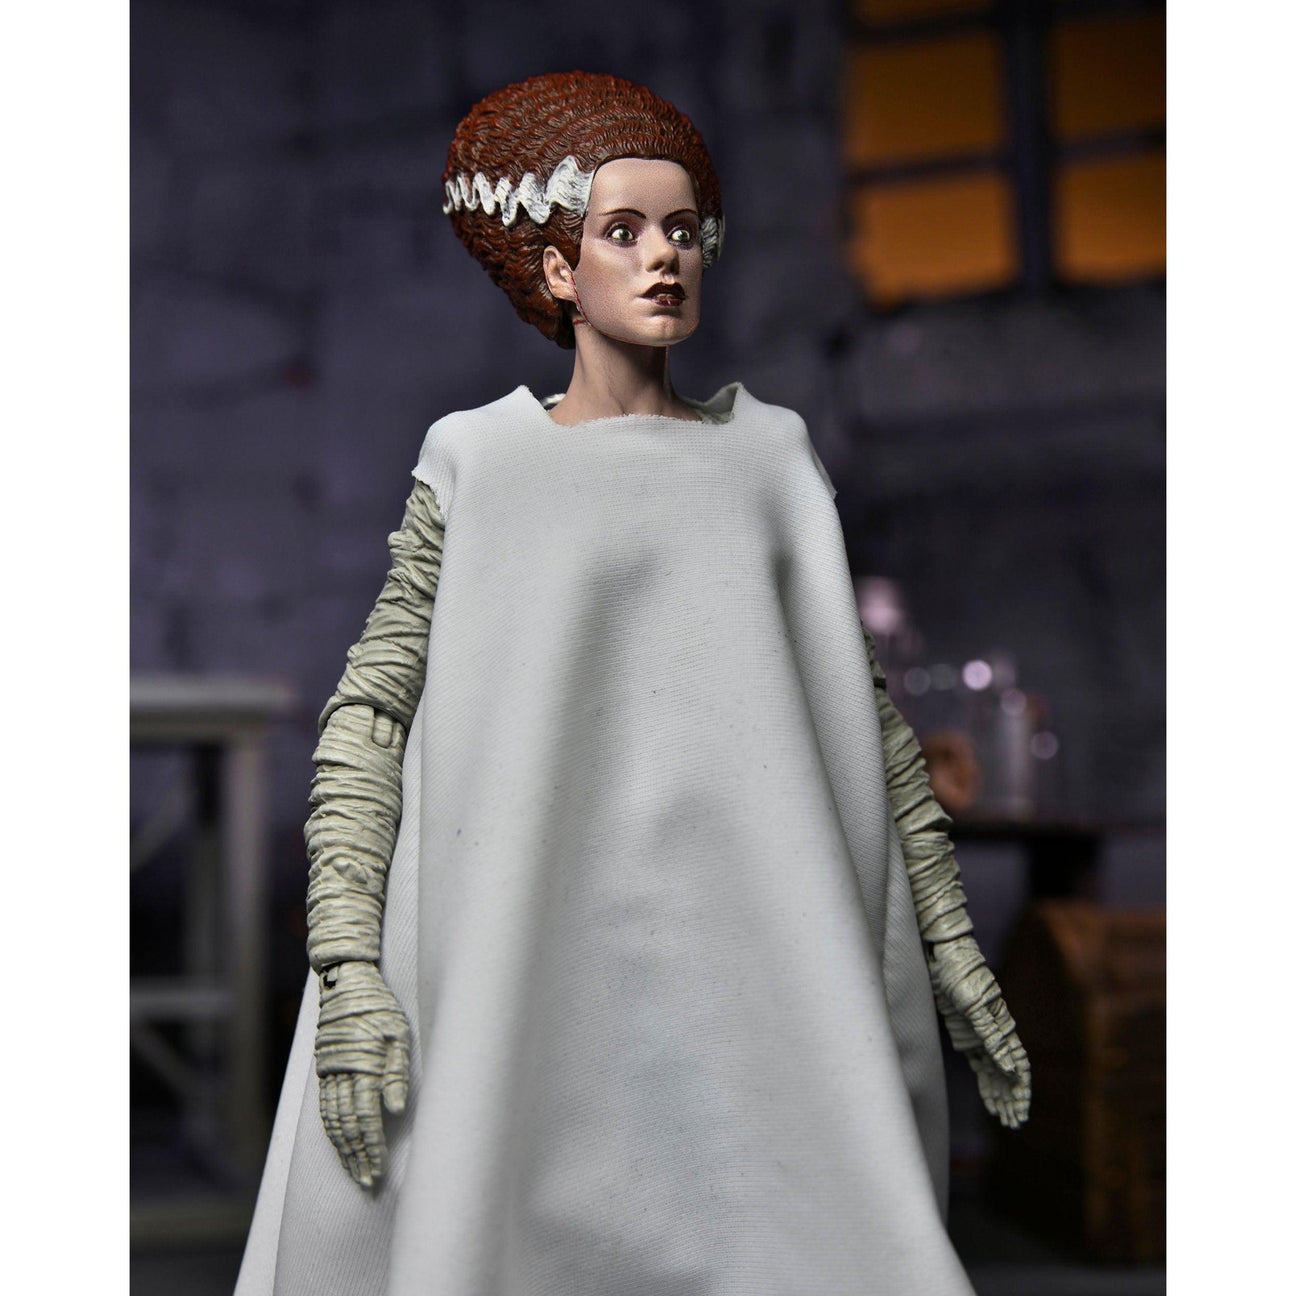 Universal Monsters: Ultimate Bride of Frankenstein (Color)-Actionfiguren-NECA-Mighty Underground